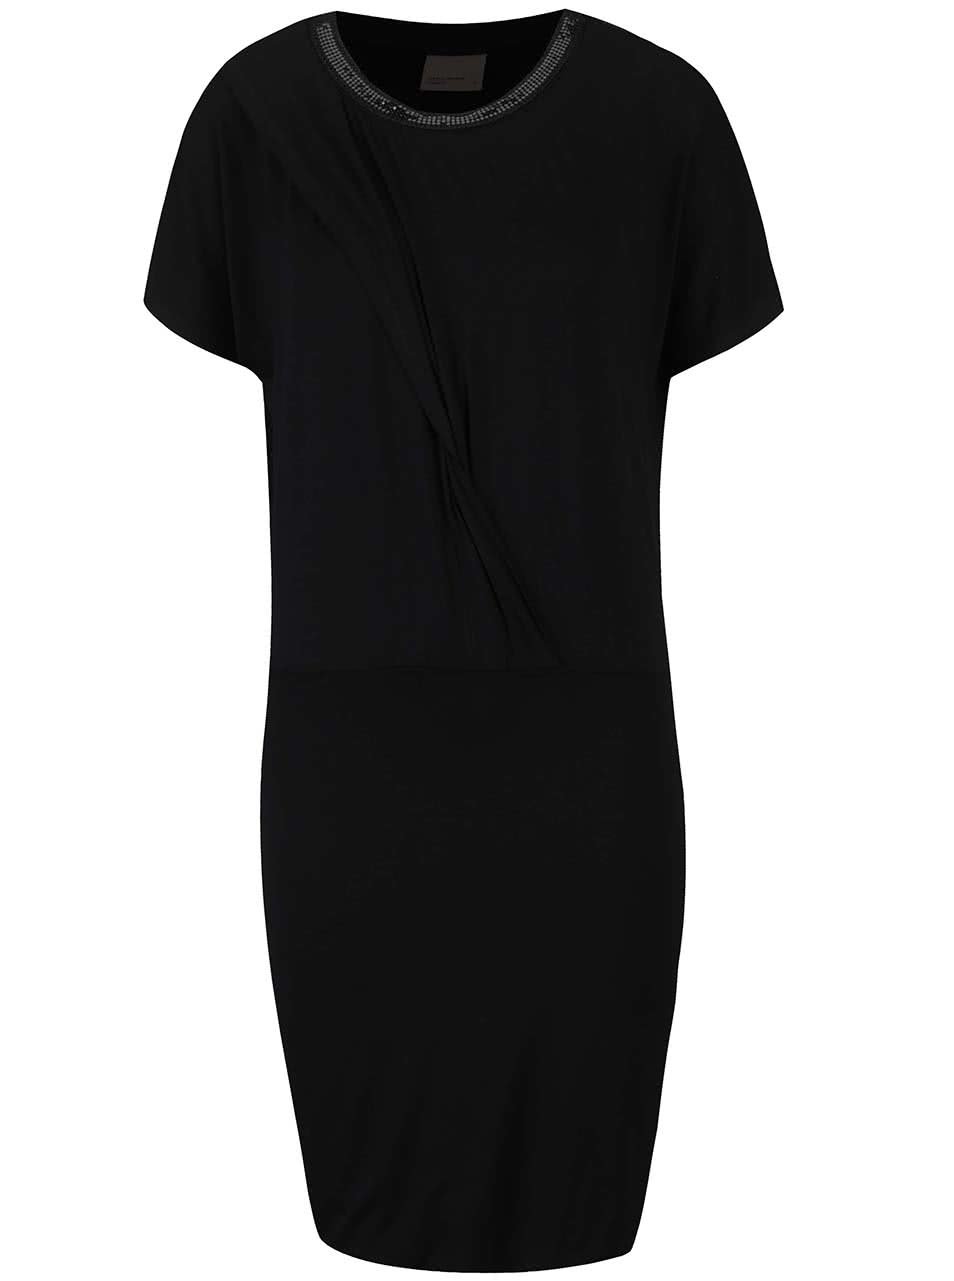 Černé šaty š překládaným topem a ozdobným detailem Vero Moda Jany